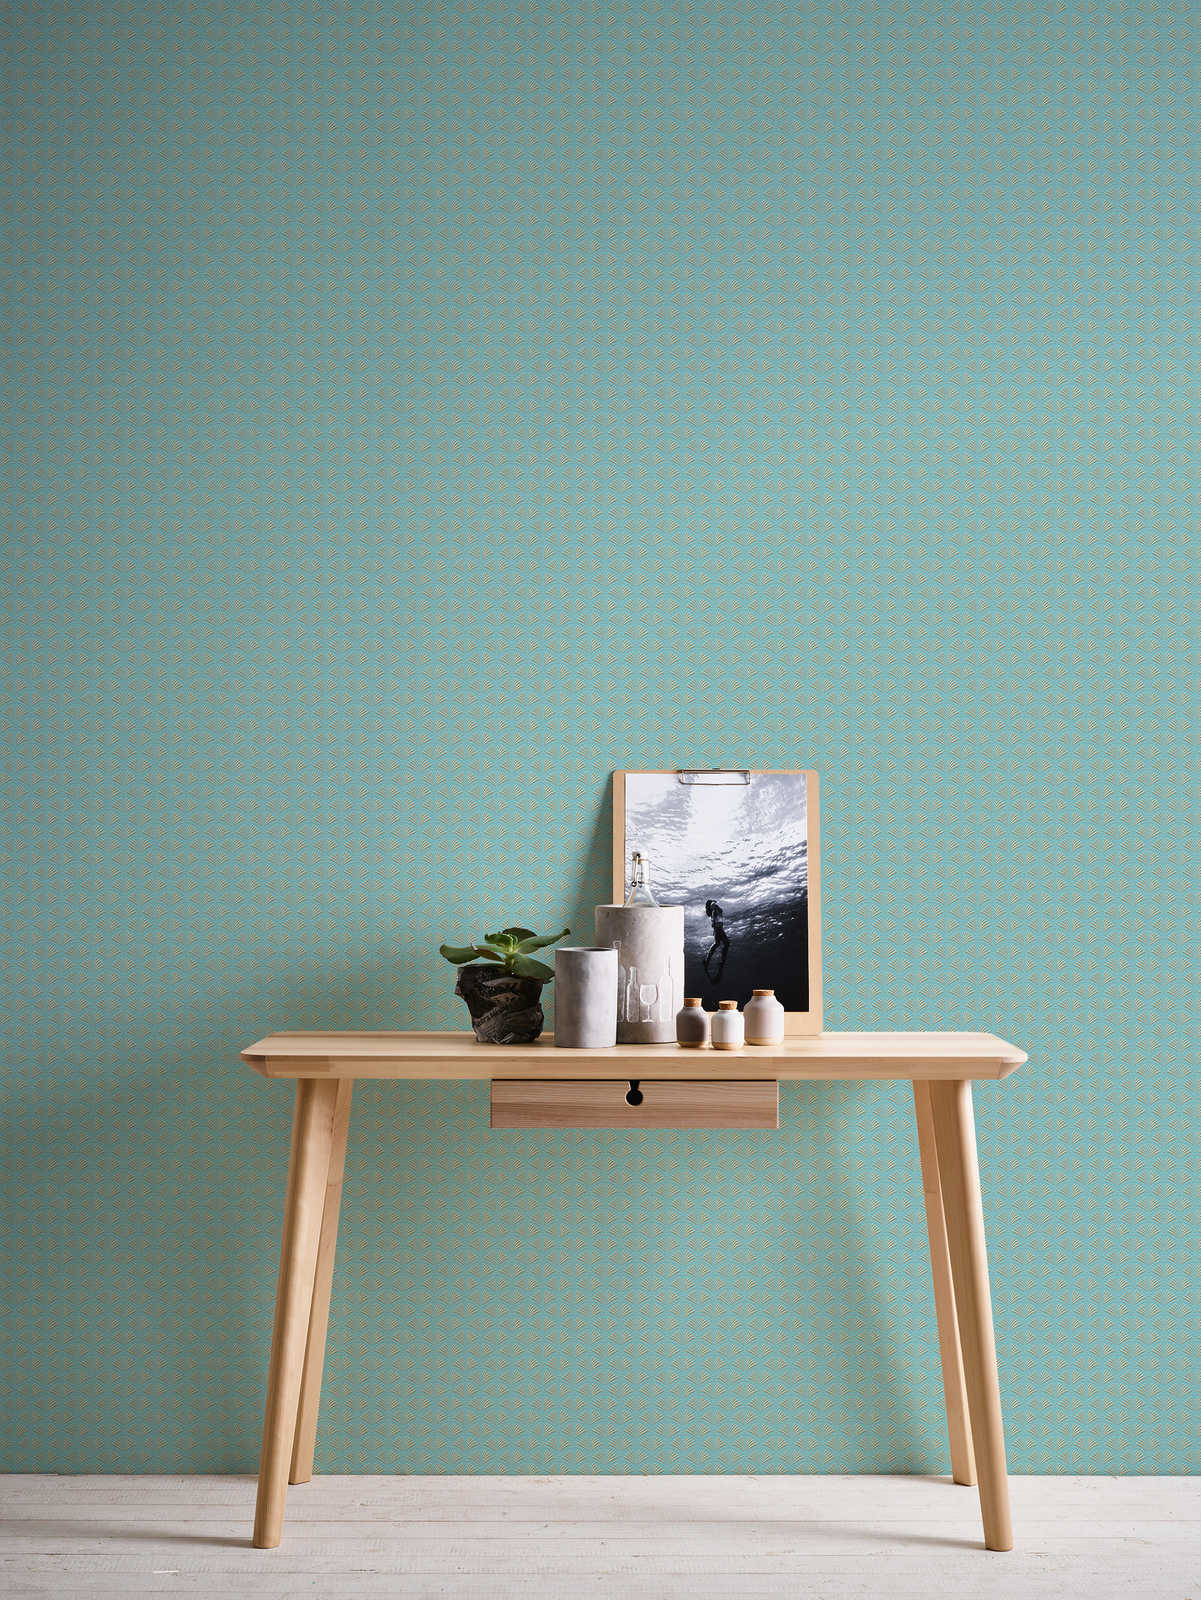             Papier peint intissé turquoise & or Design, effet brillant métallique élégant
        